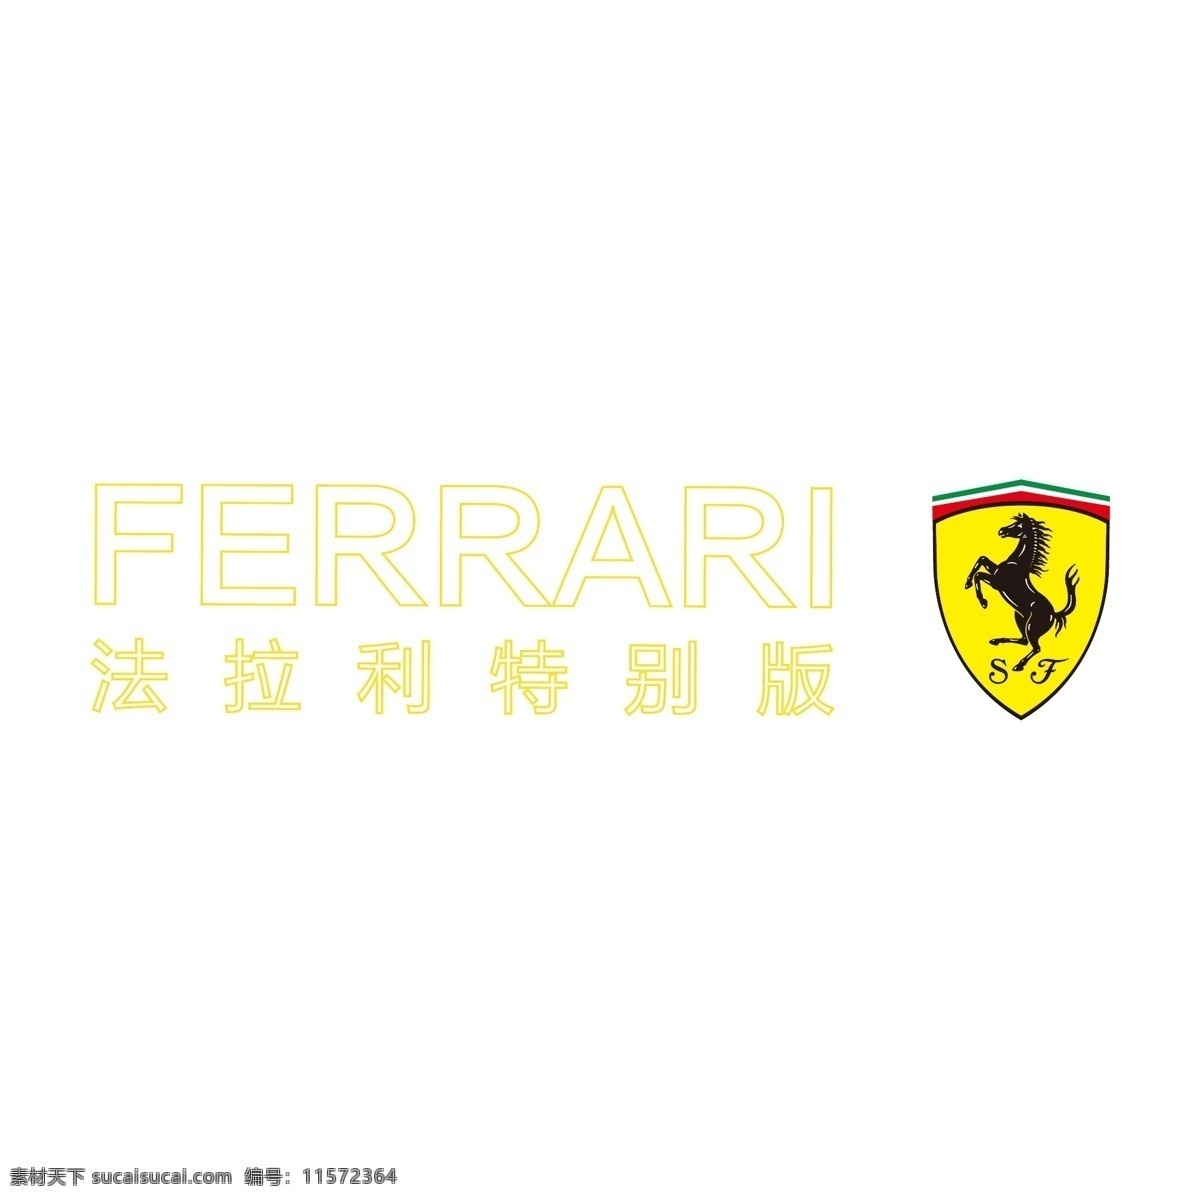 法拉利标志 ferrari 跑车 奢侈 名牌 大牌 商标 logo 潮牌 卡通设计 logo集合 标志图标 企业 标志